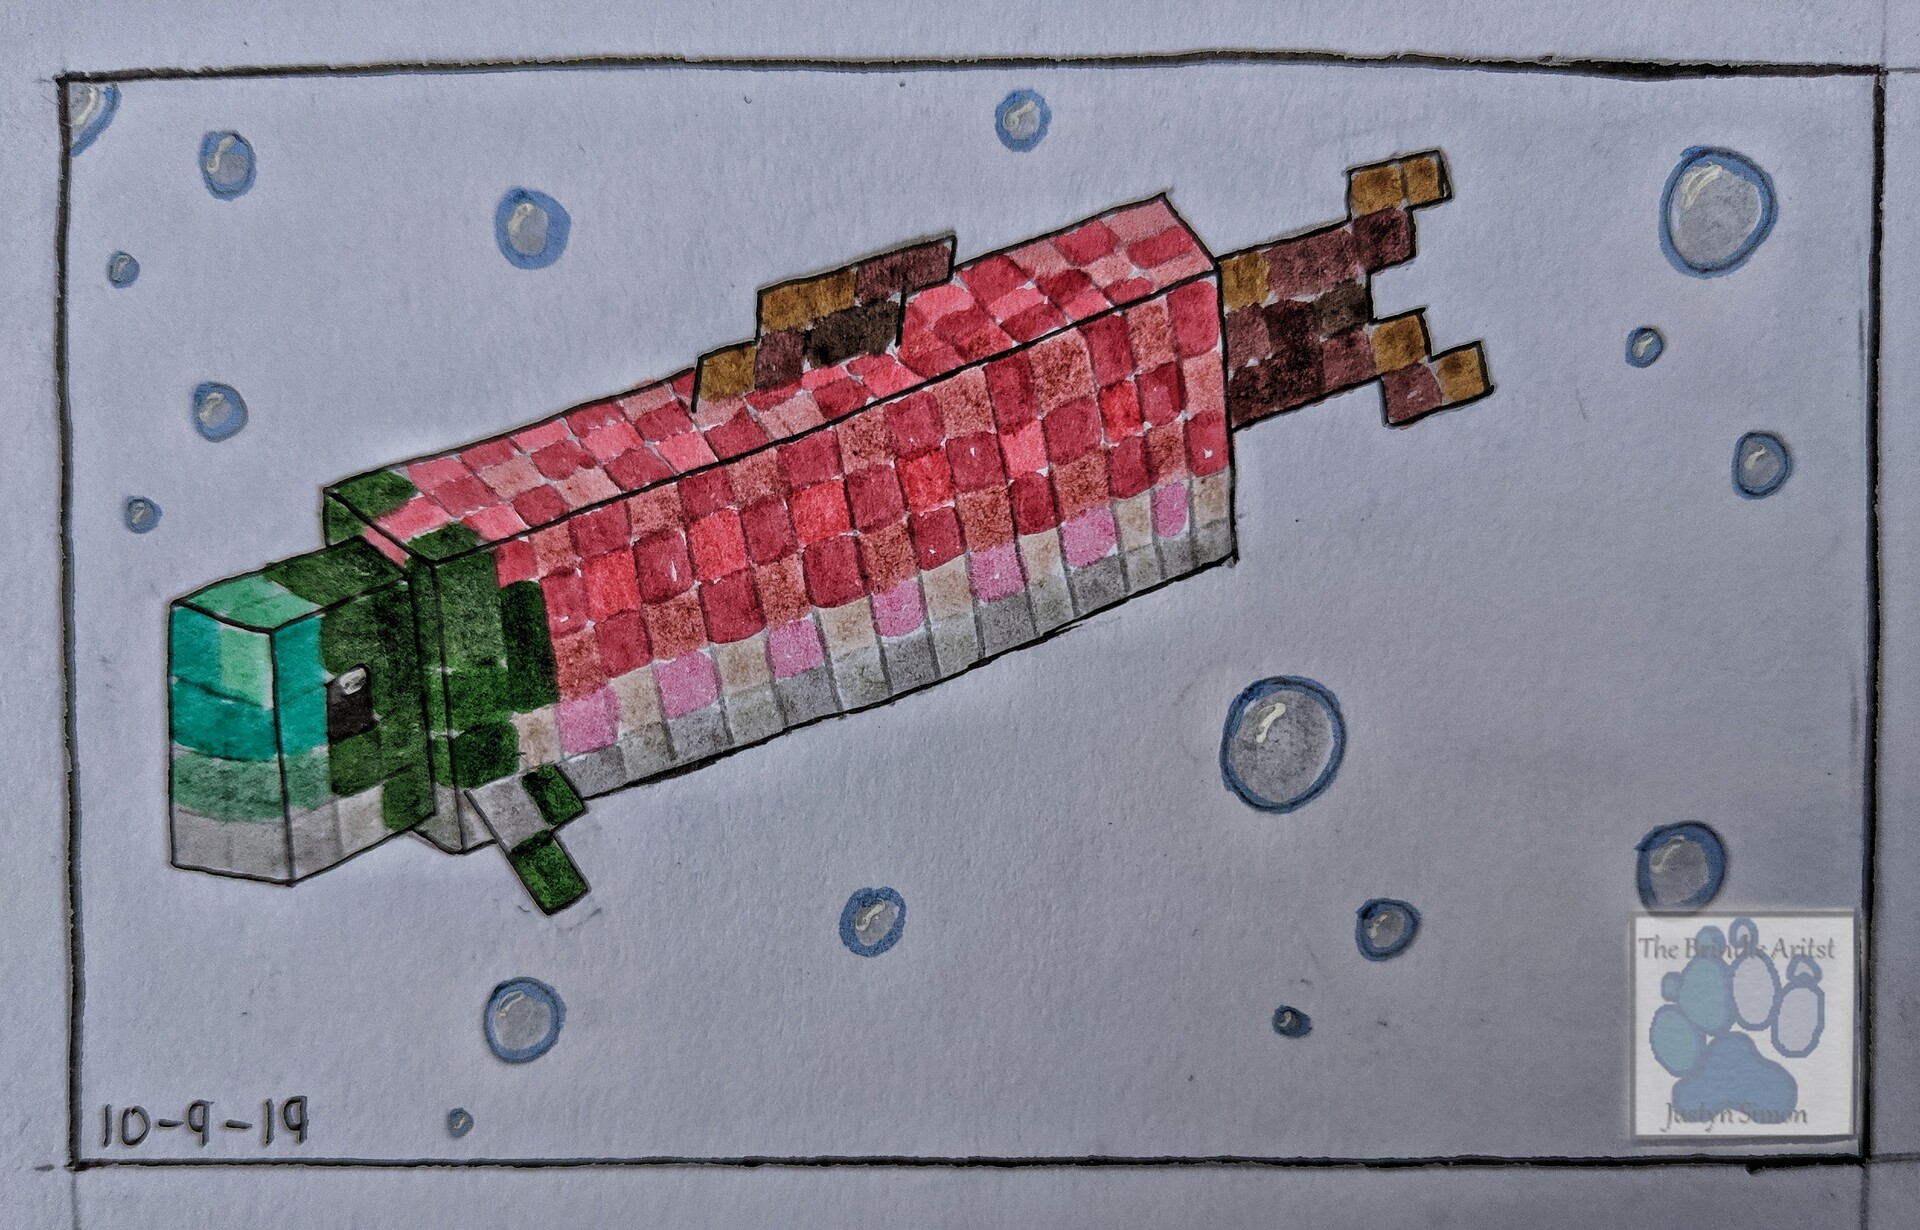 Minecraft Salmon